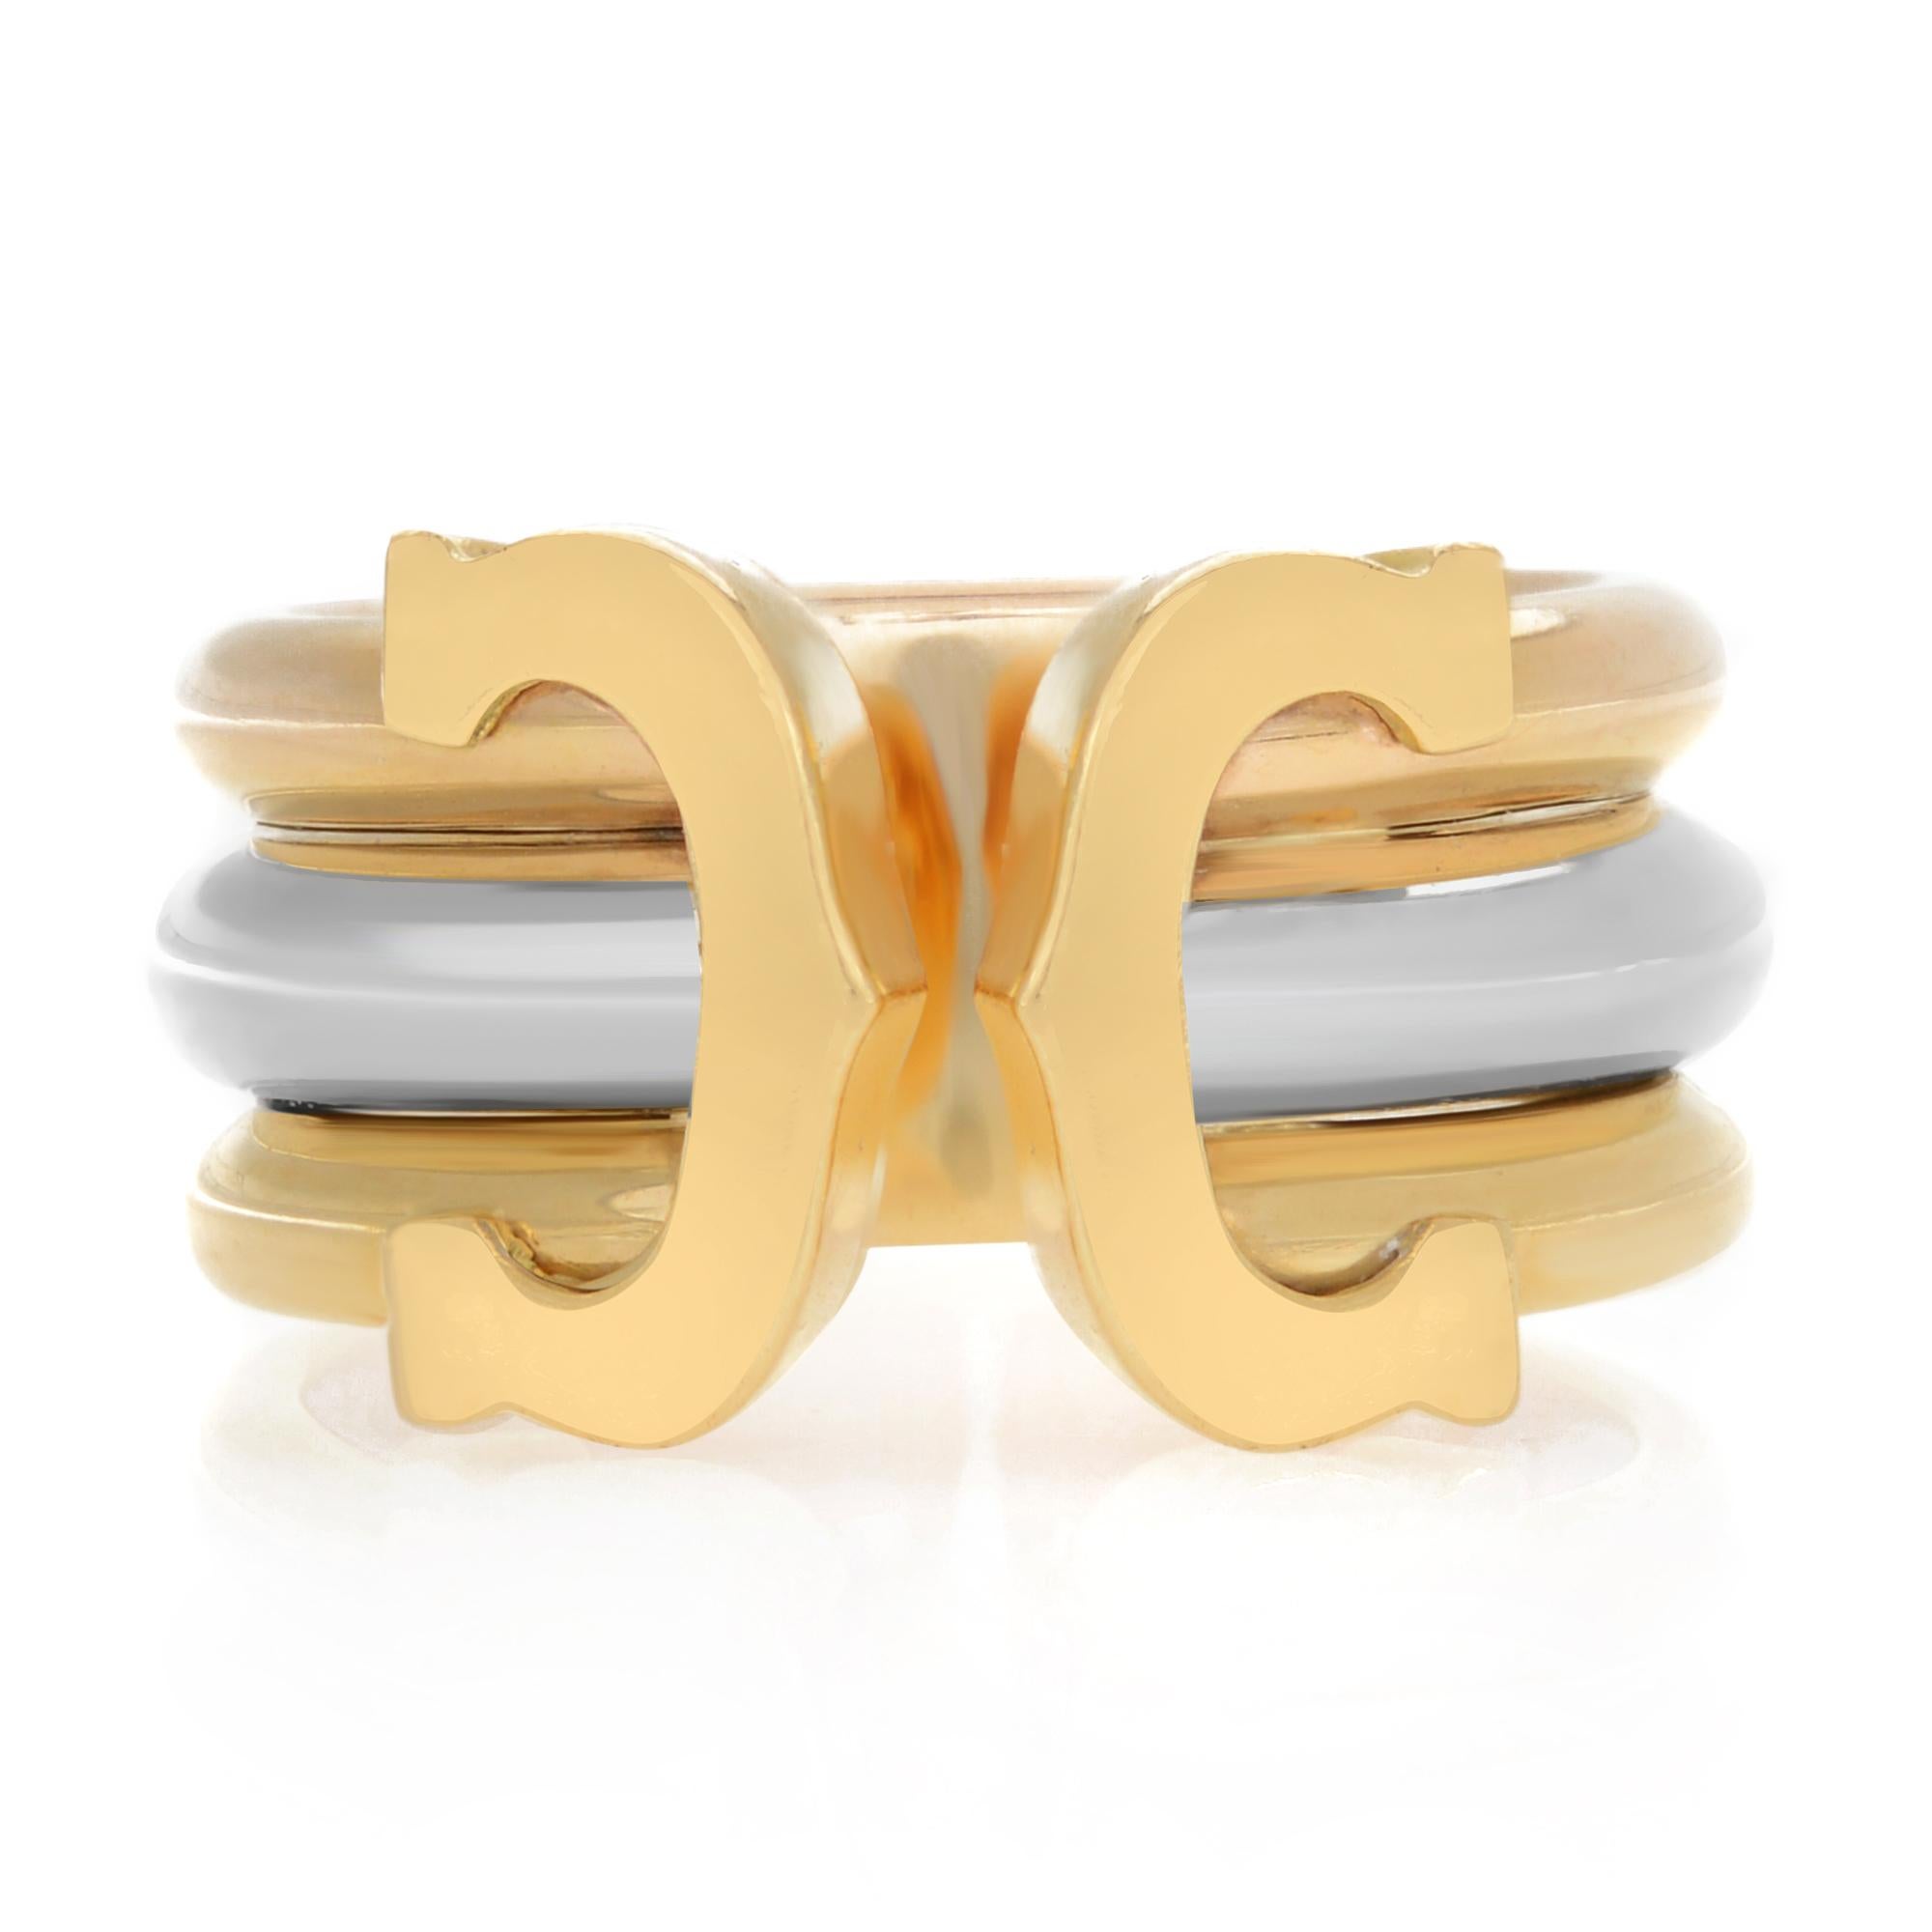 Ring von Cartier aus der Collection'S Double C. Er ist aus massivem 18-karätigem Gelb-, Rosé- und Weißgold gefertigt und hochglanzpoliert. Das Band besteht aus 3 dicken Drahtringen, die miteinander verbunden und gestapelt sind und ein wunderschönes